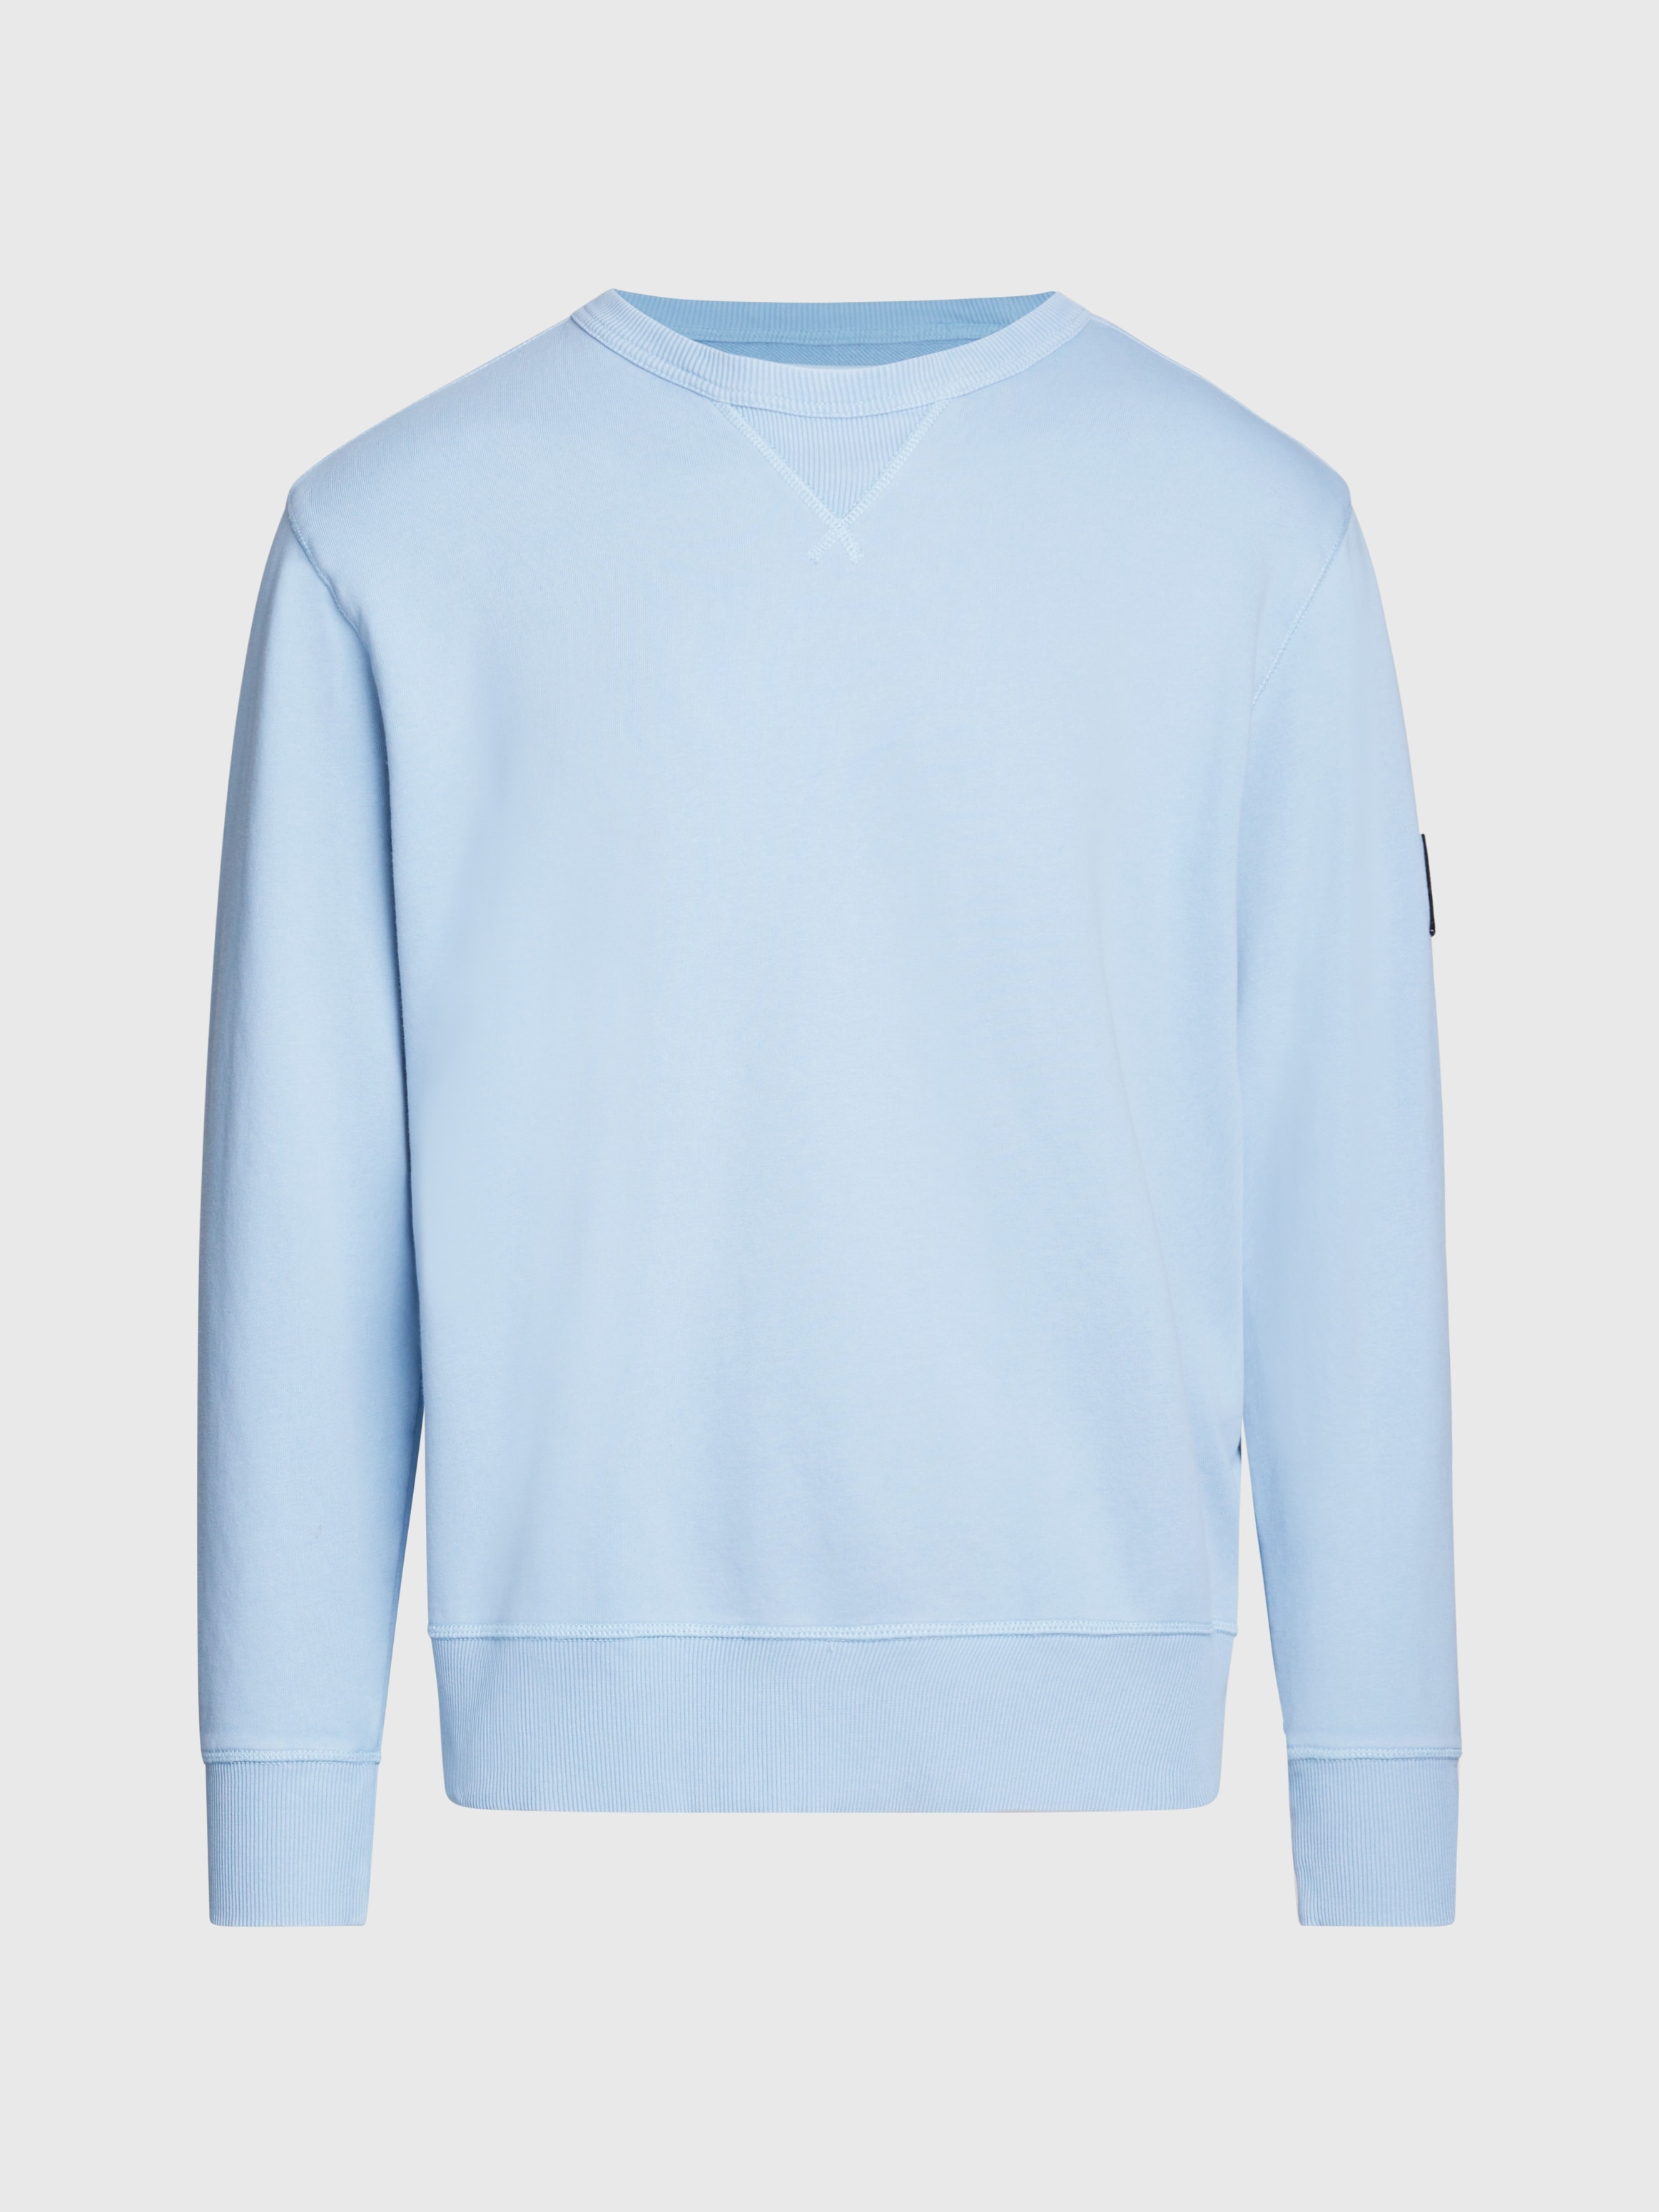 Calvin Klein Jeans Sweatshirt »WASHED BADGE CREW NECK«, mit Logopatch